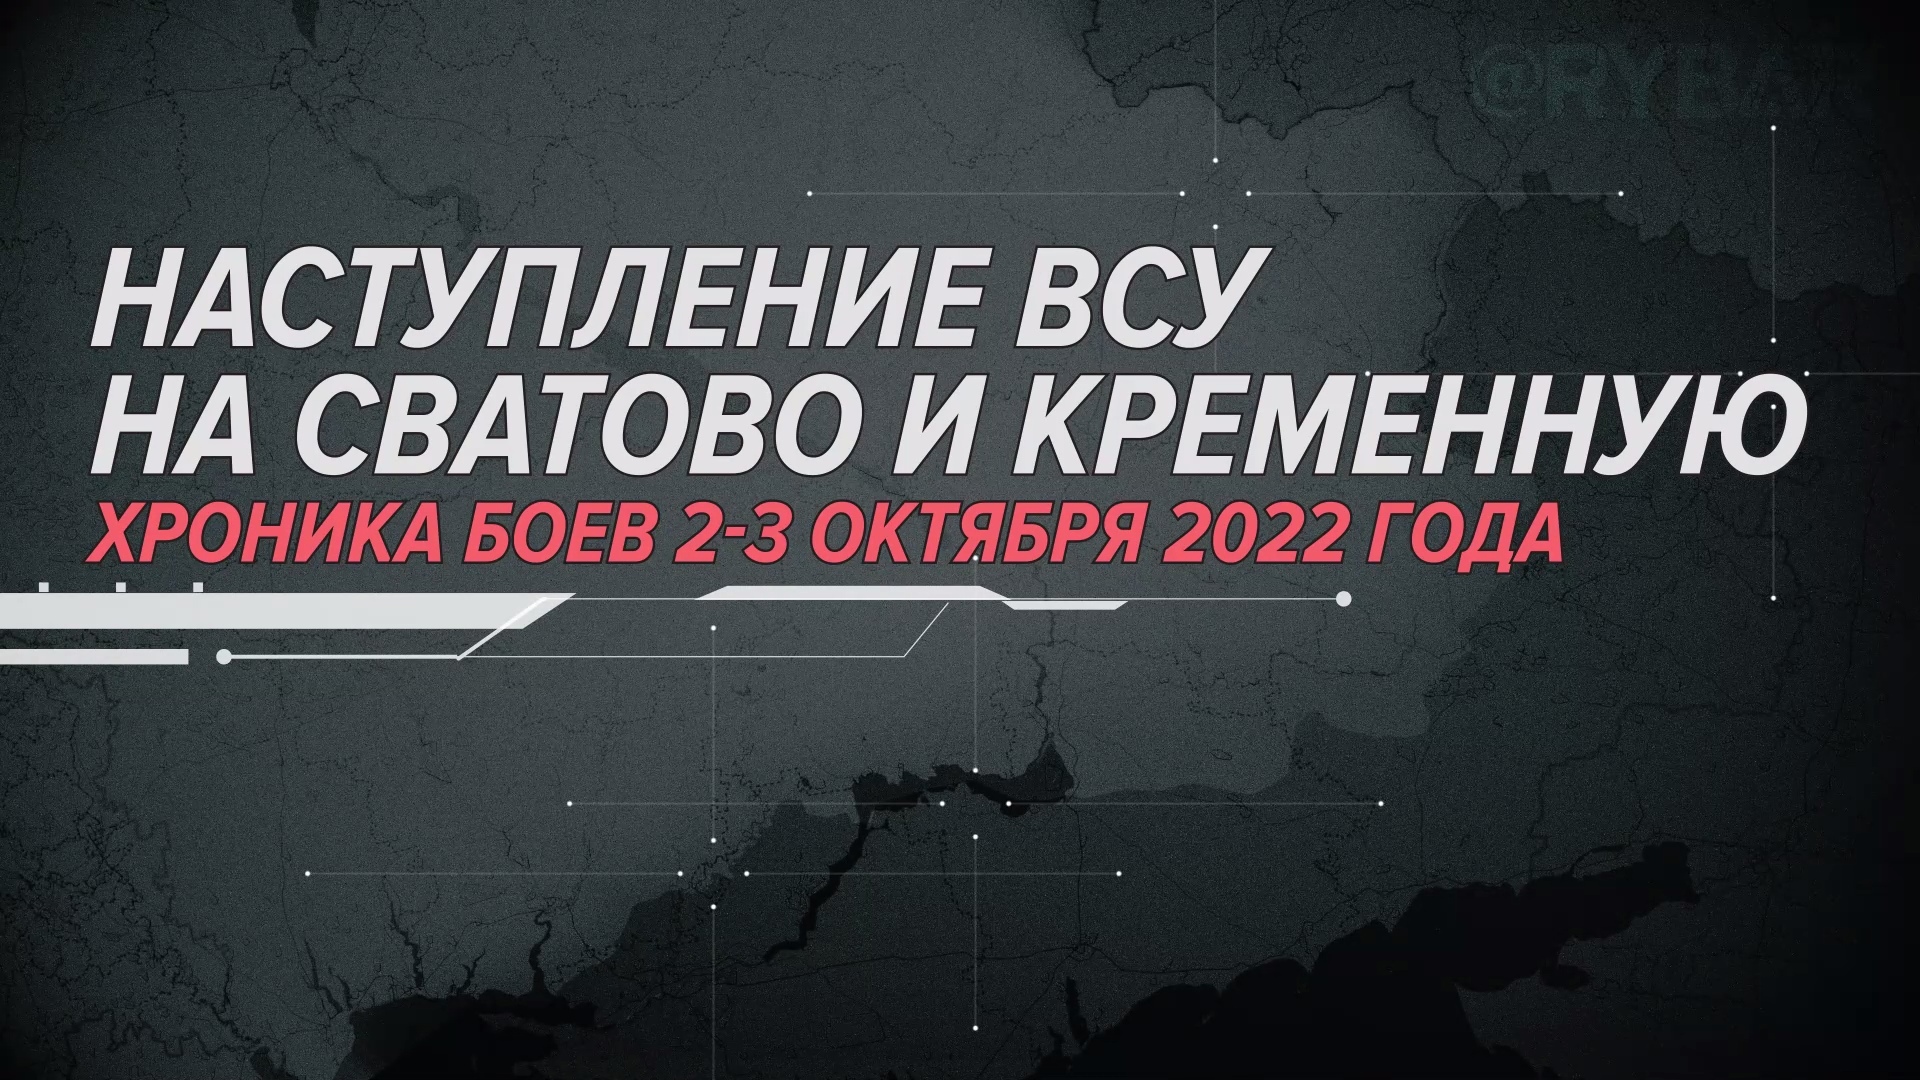 Наступление ВСУ на Сватово и Кременную. Хроника боев 2-3 октября 2022 года